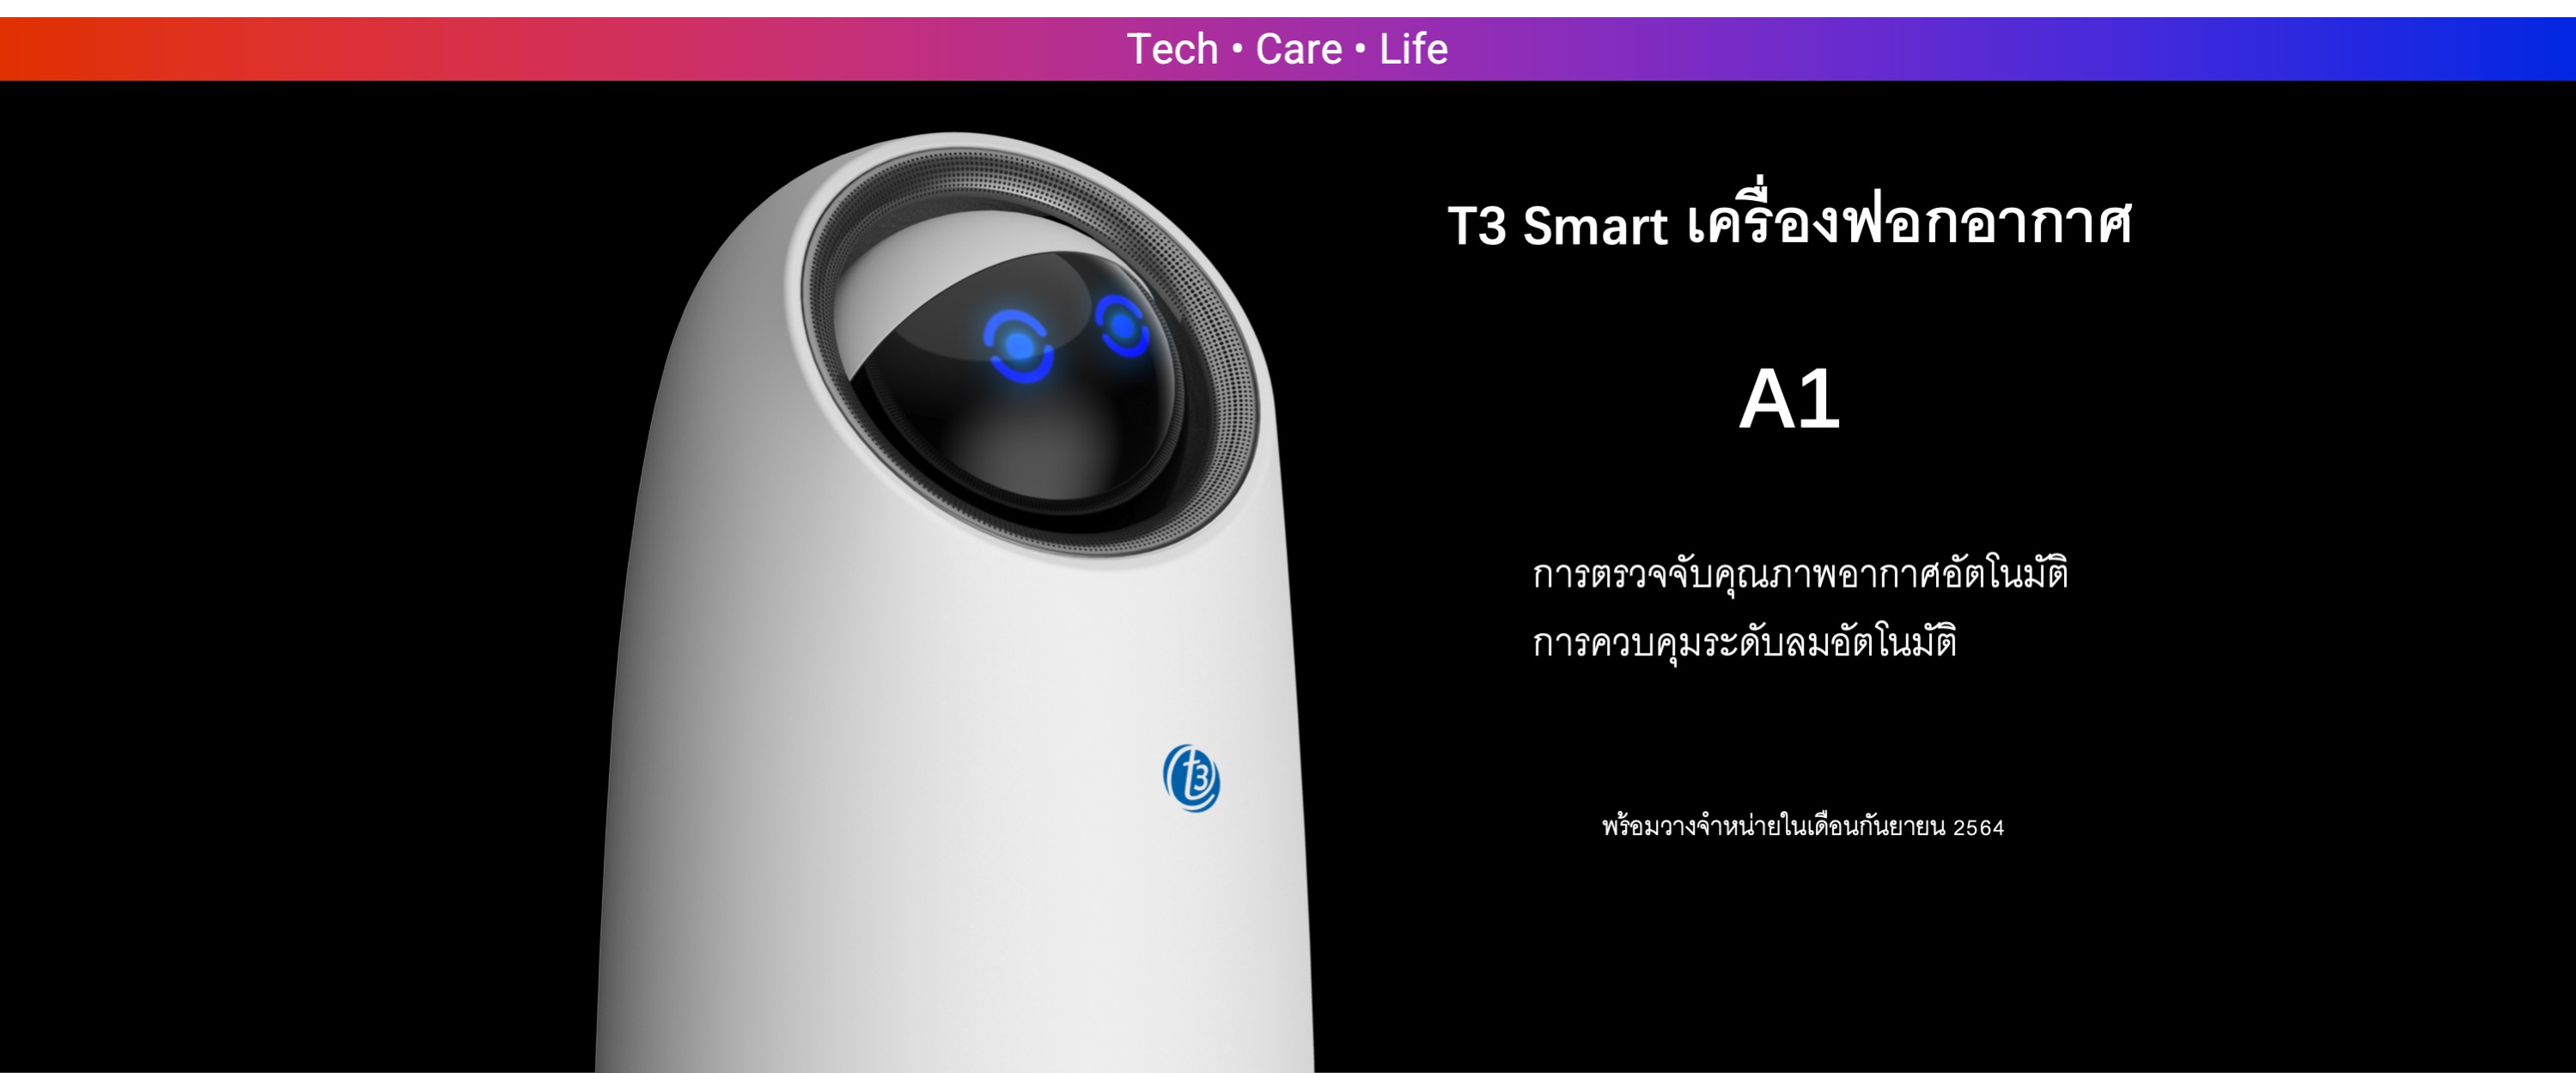 T3 Smart Air Purifier A1